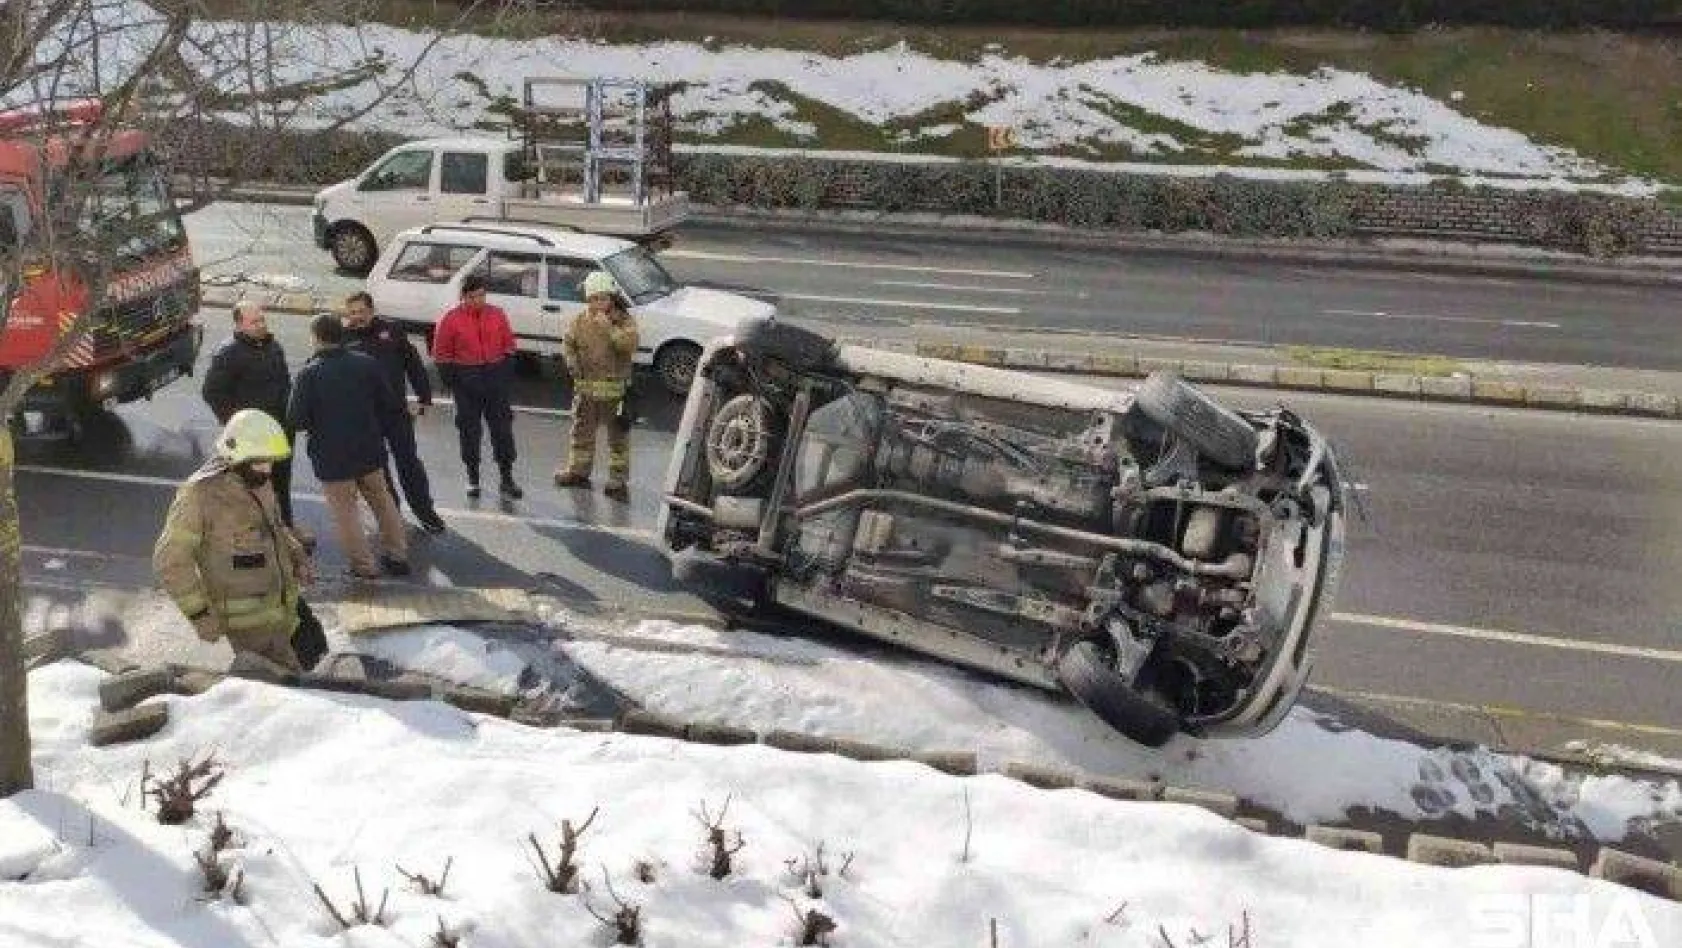 Sultangazi'de sürücüsünün direksiyon hakimiyetini kaybettiği araç yan yattı